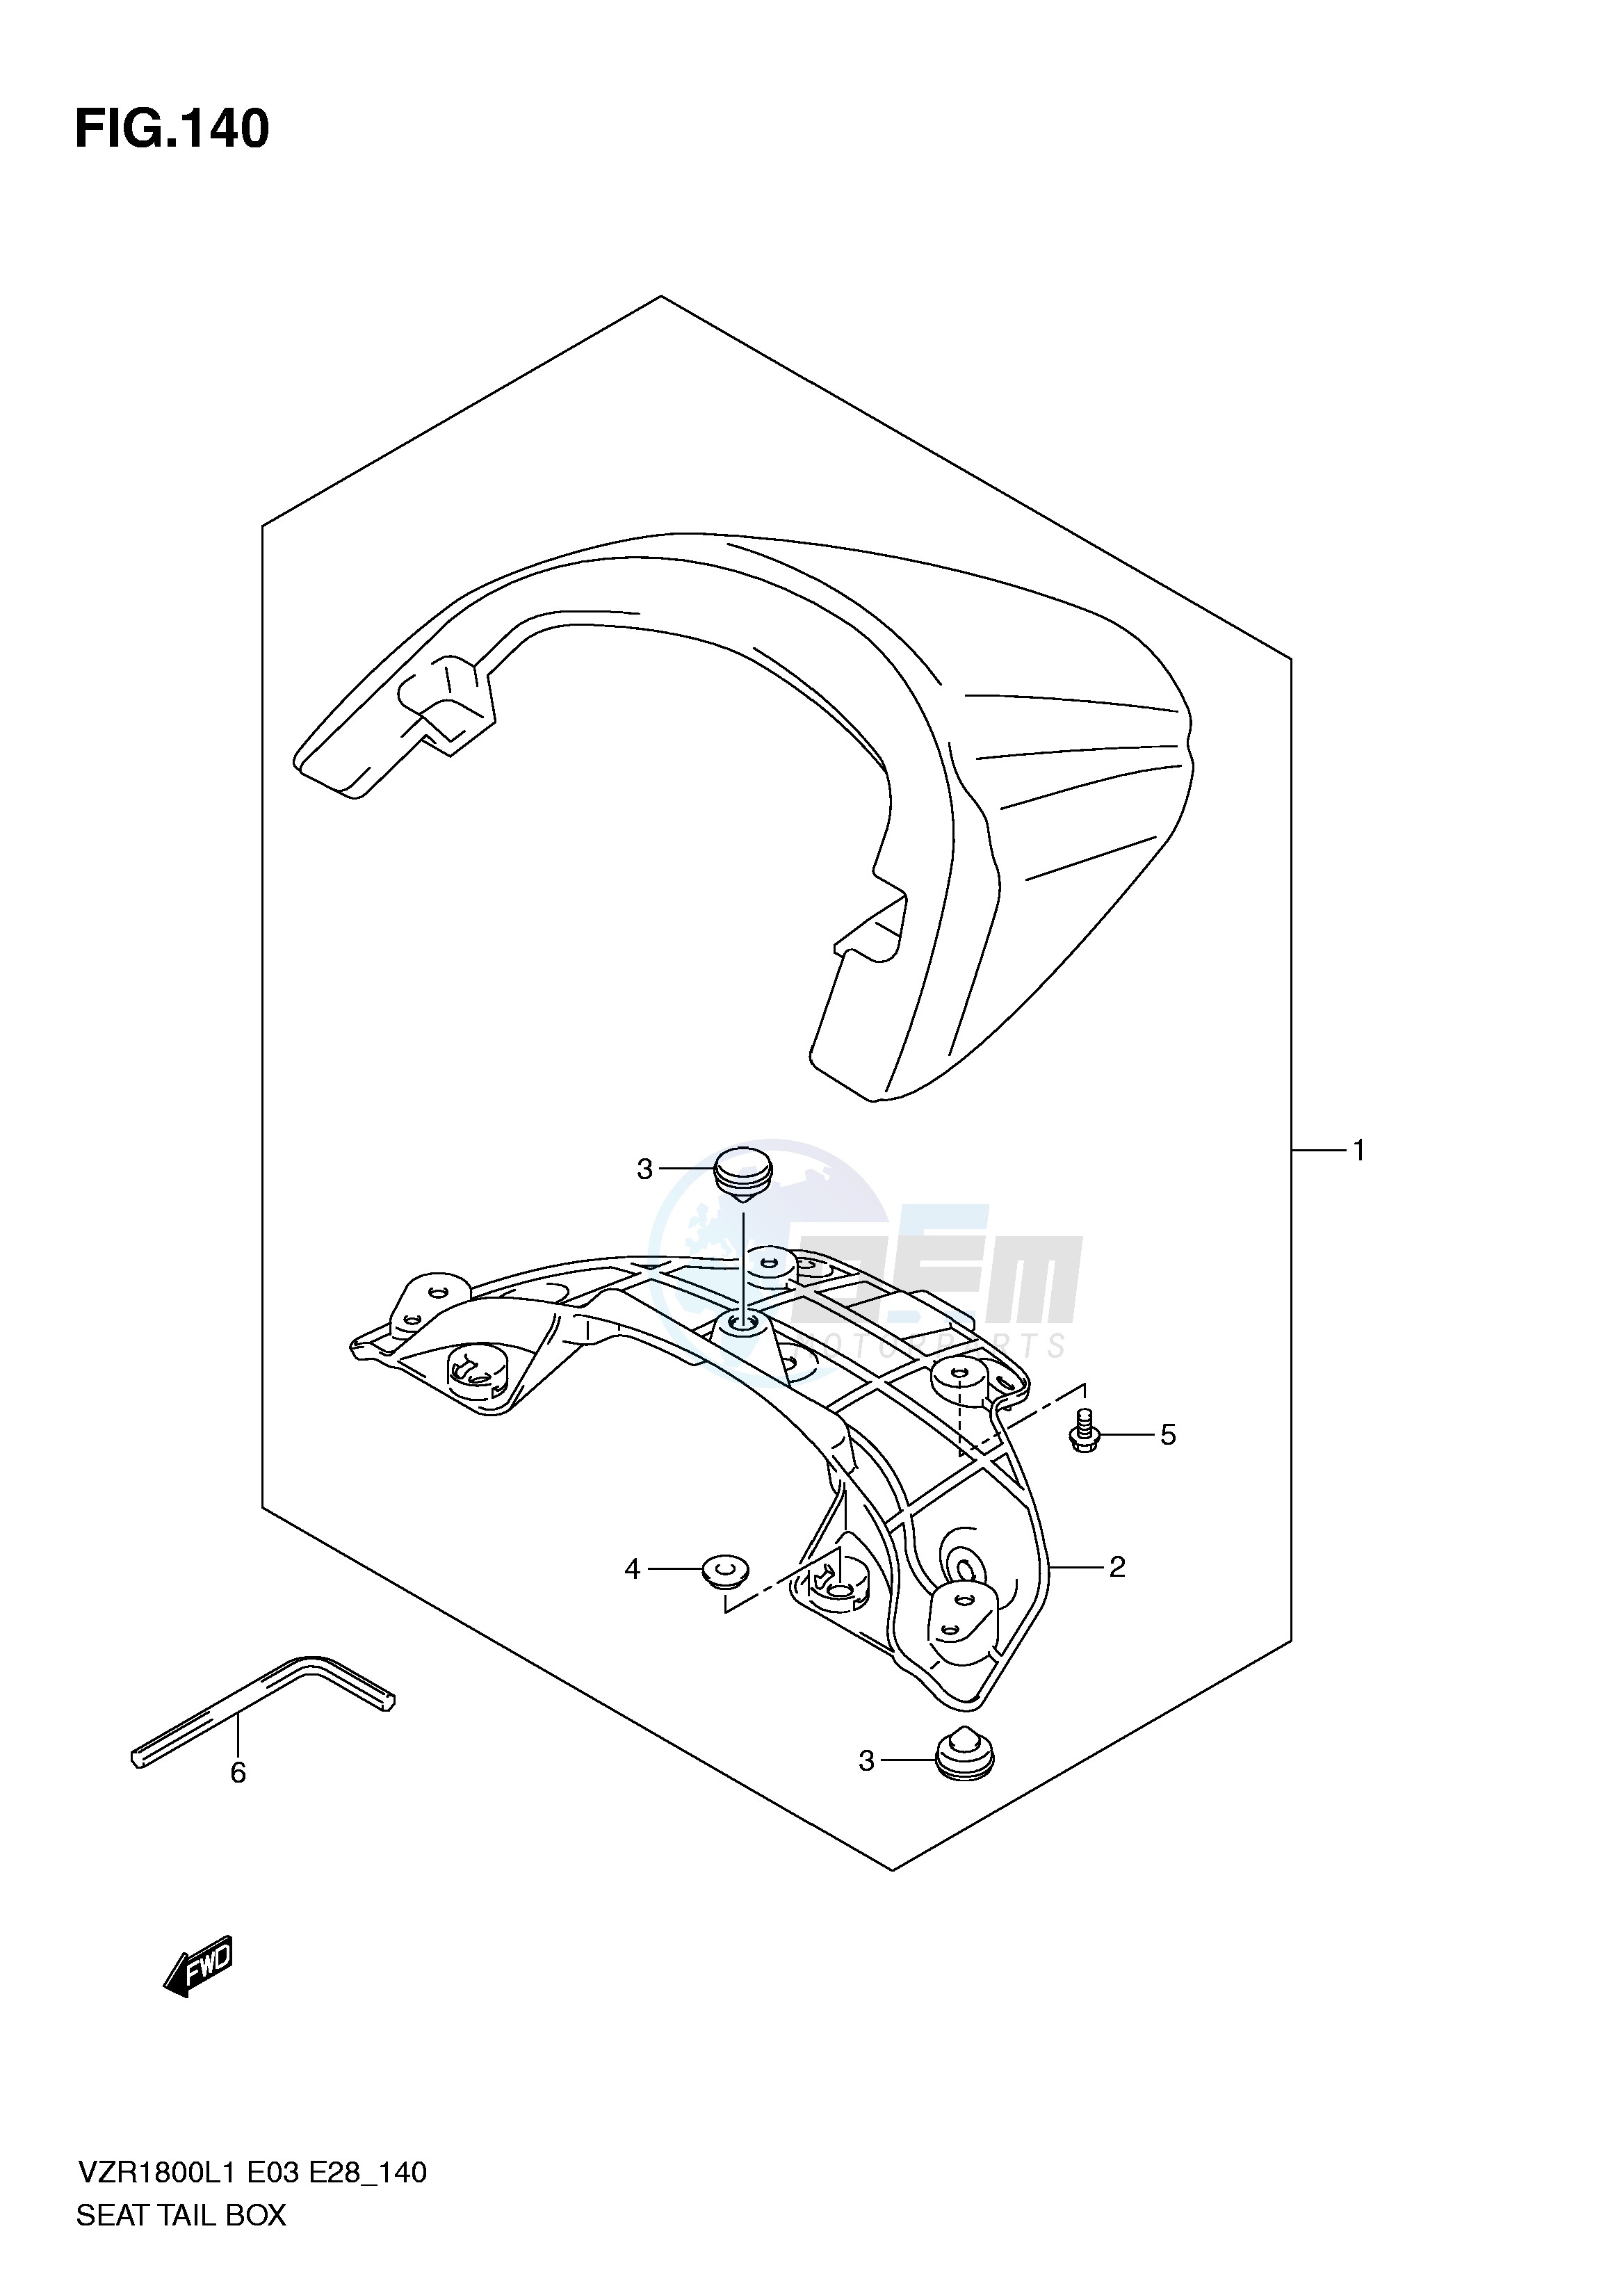 SEAT TAIL BOX (VZR1800L1 E28) blueprint